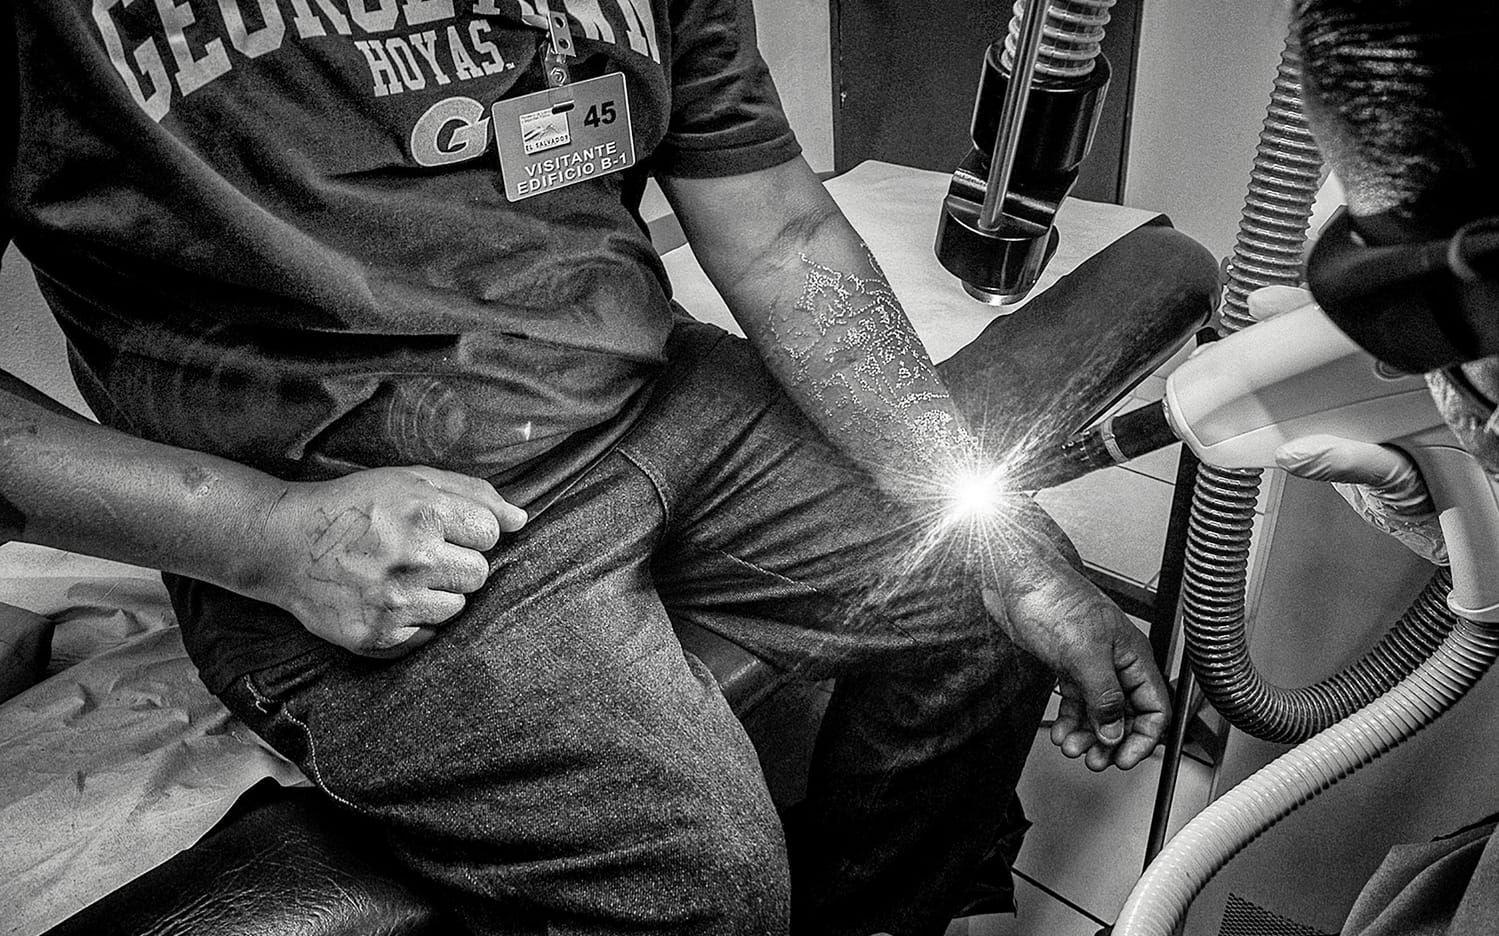 Laserbehandlinagrna får han genom ett speciellt program. En för detta gängmedlem måste visa flera rekommendationsbrev och bevisa att han lämnat gänget, till exempel med det id-kort man får av evangeliska kyrkor. Det krävs tiotals behandlingar för att få bort tatueringarna.